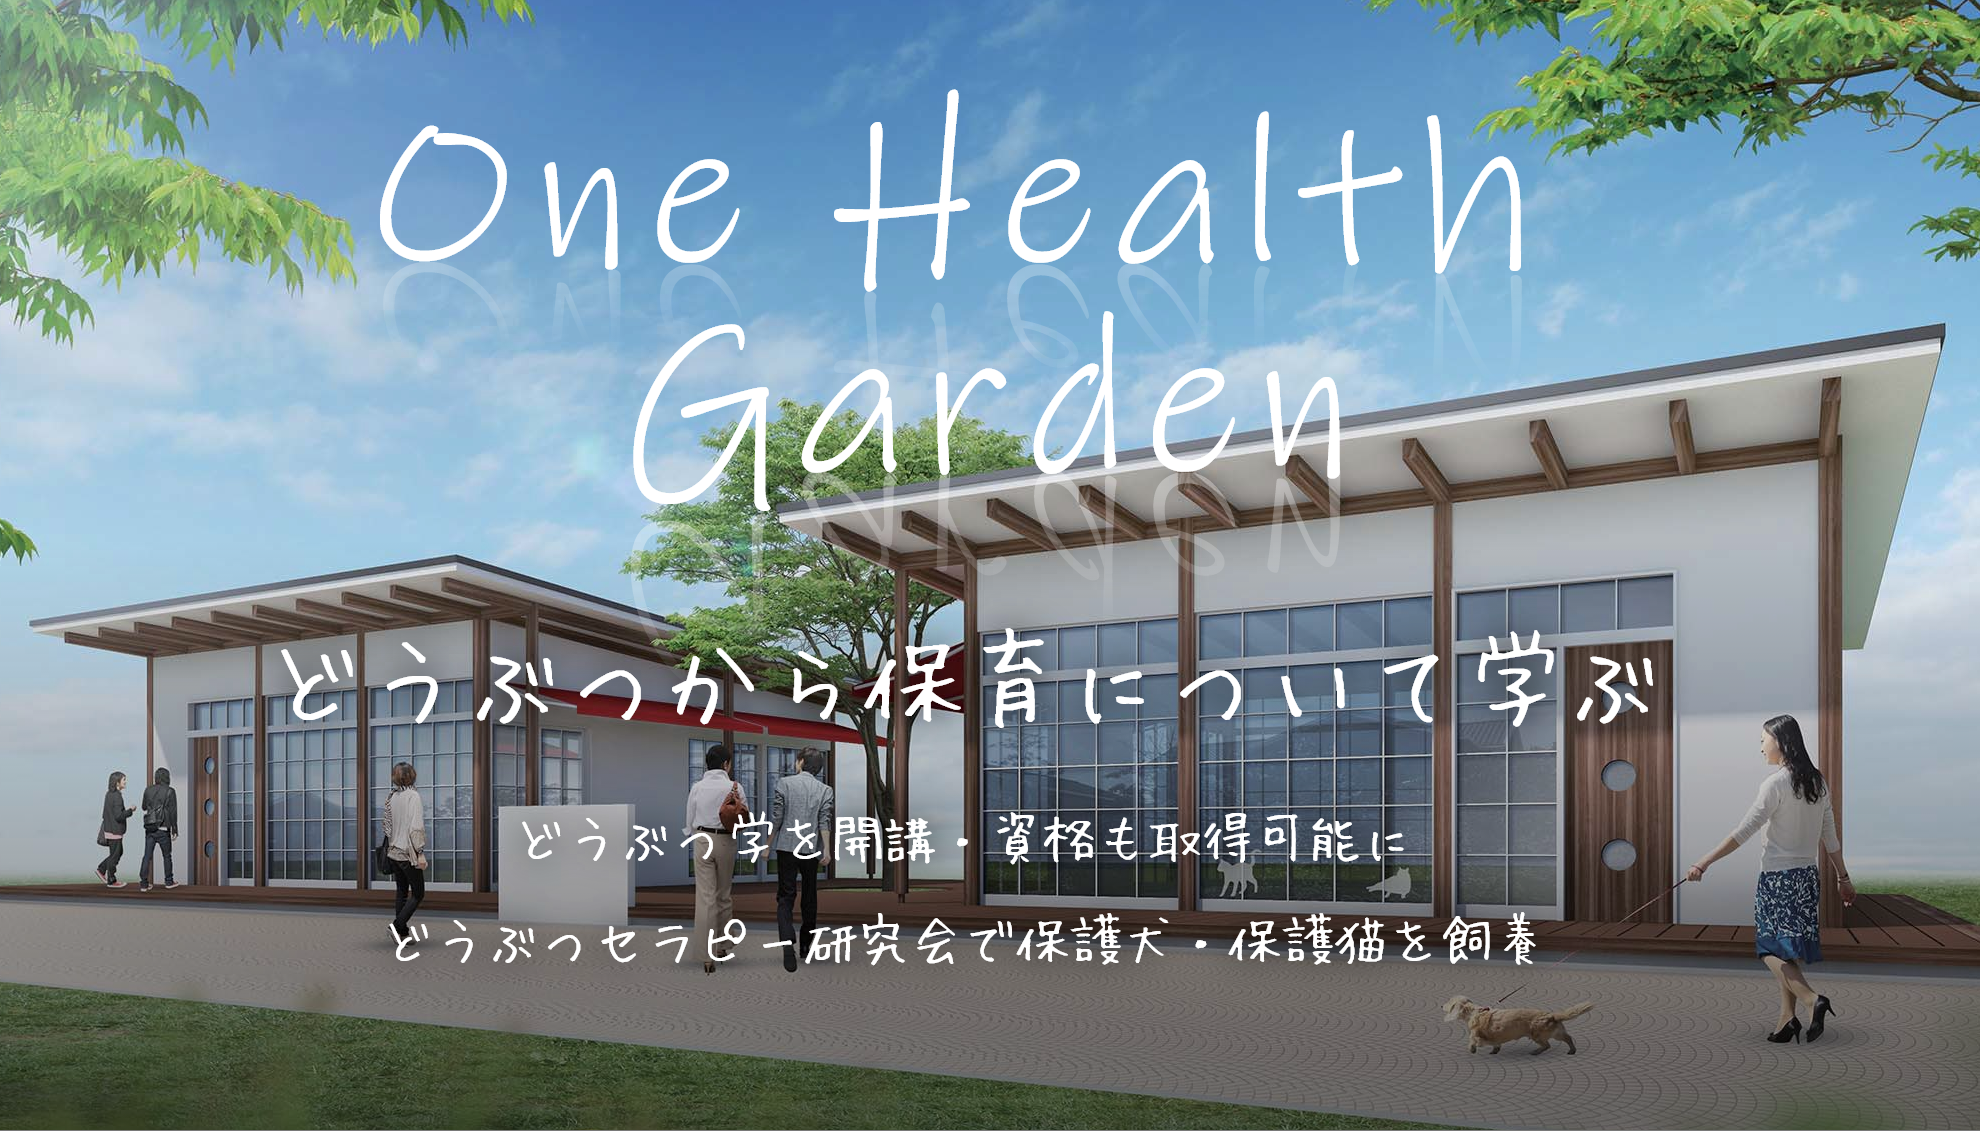 one Health Garden